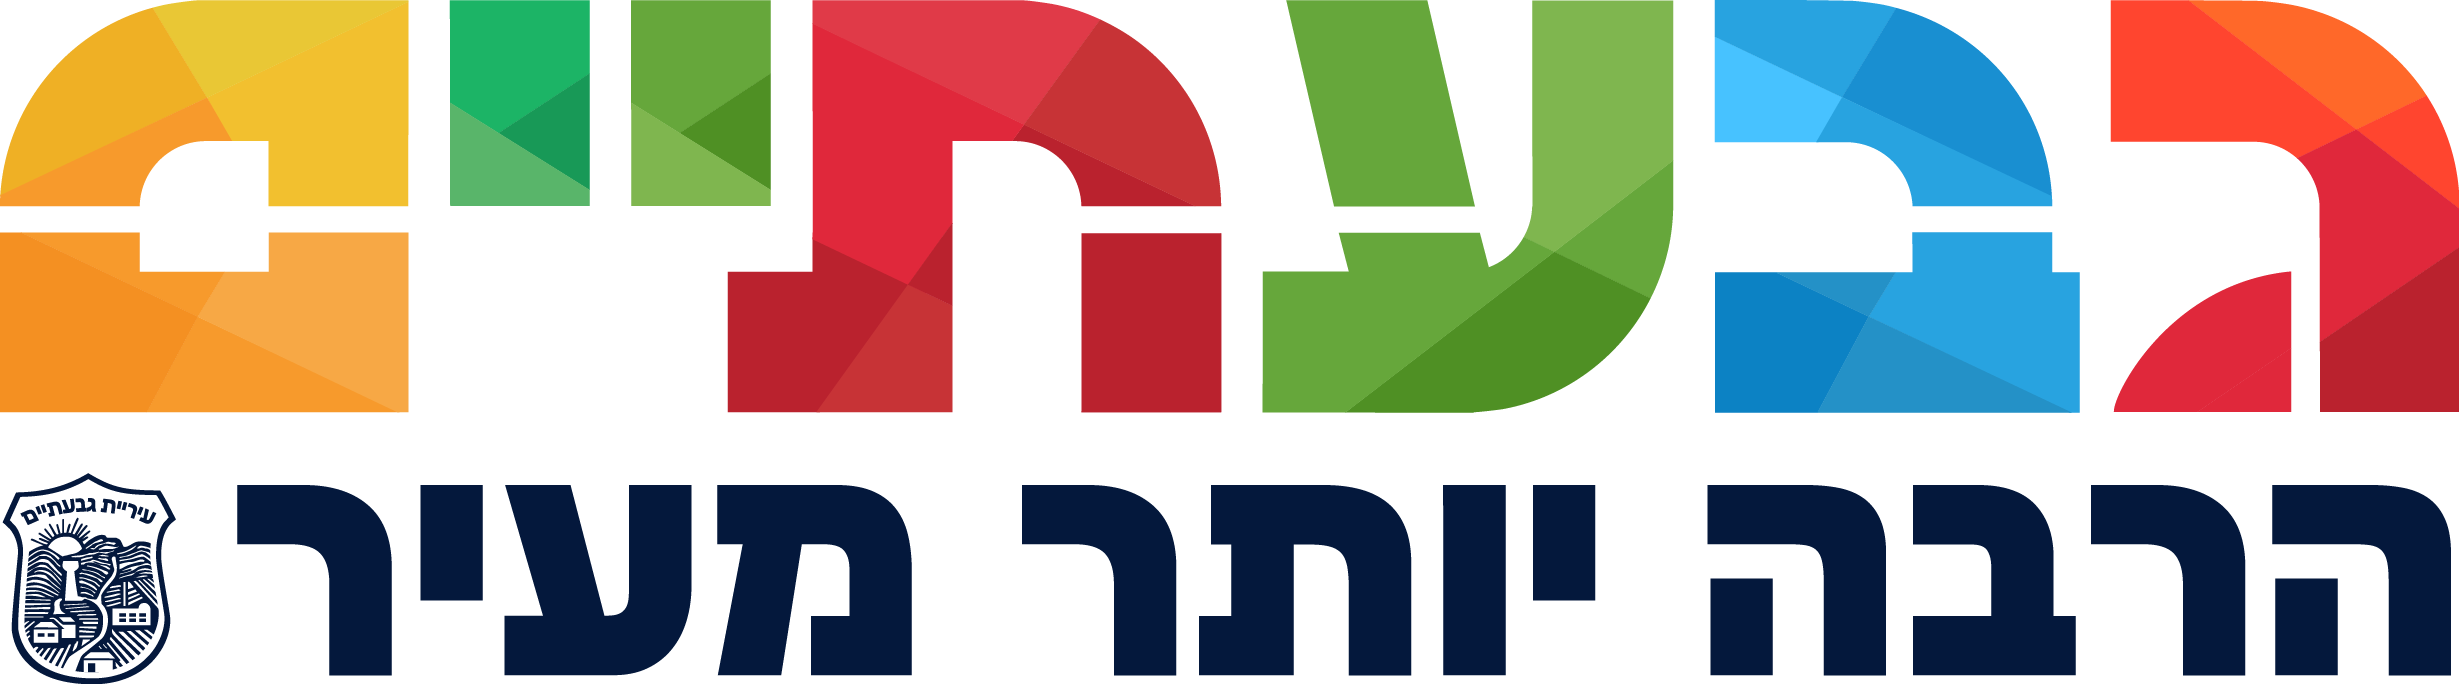 לוגו הרשות